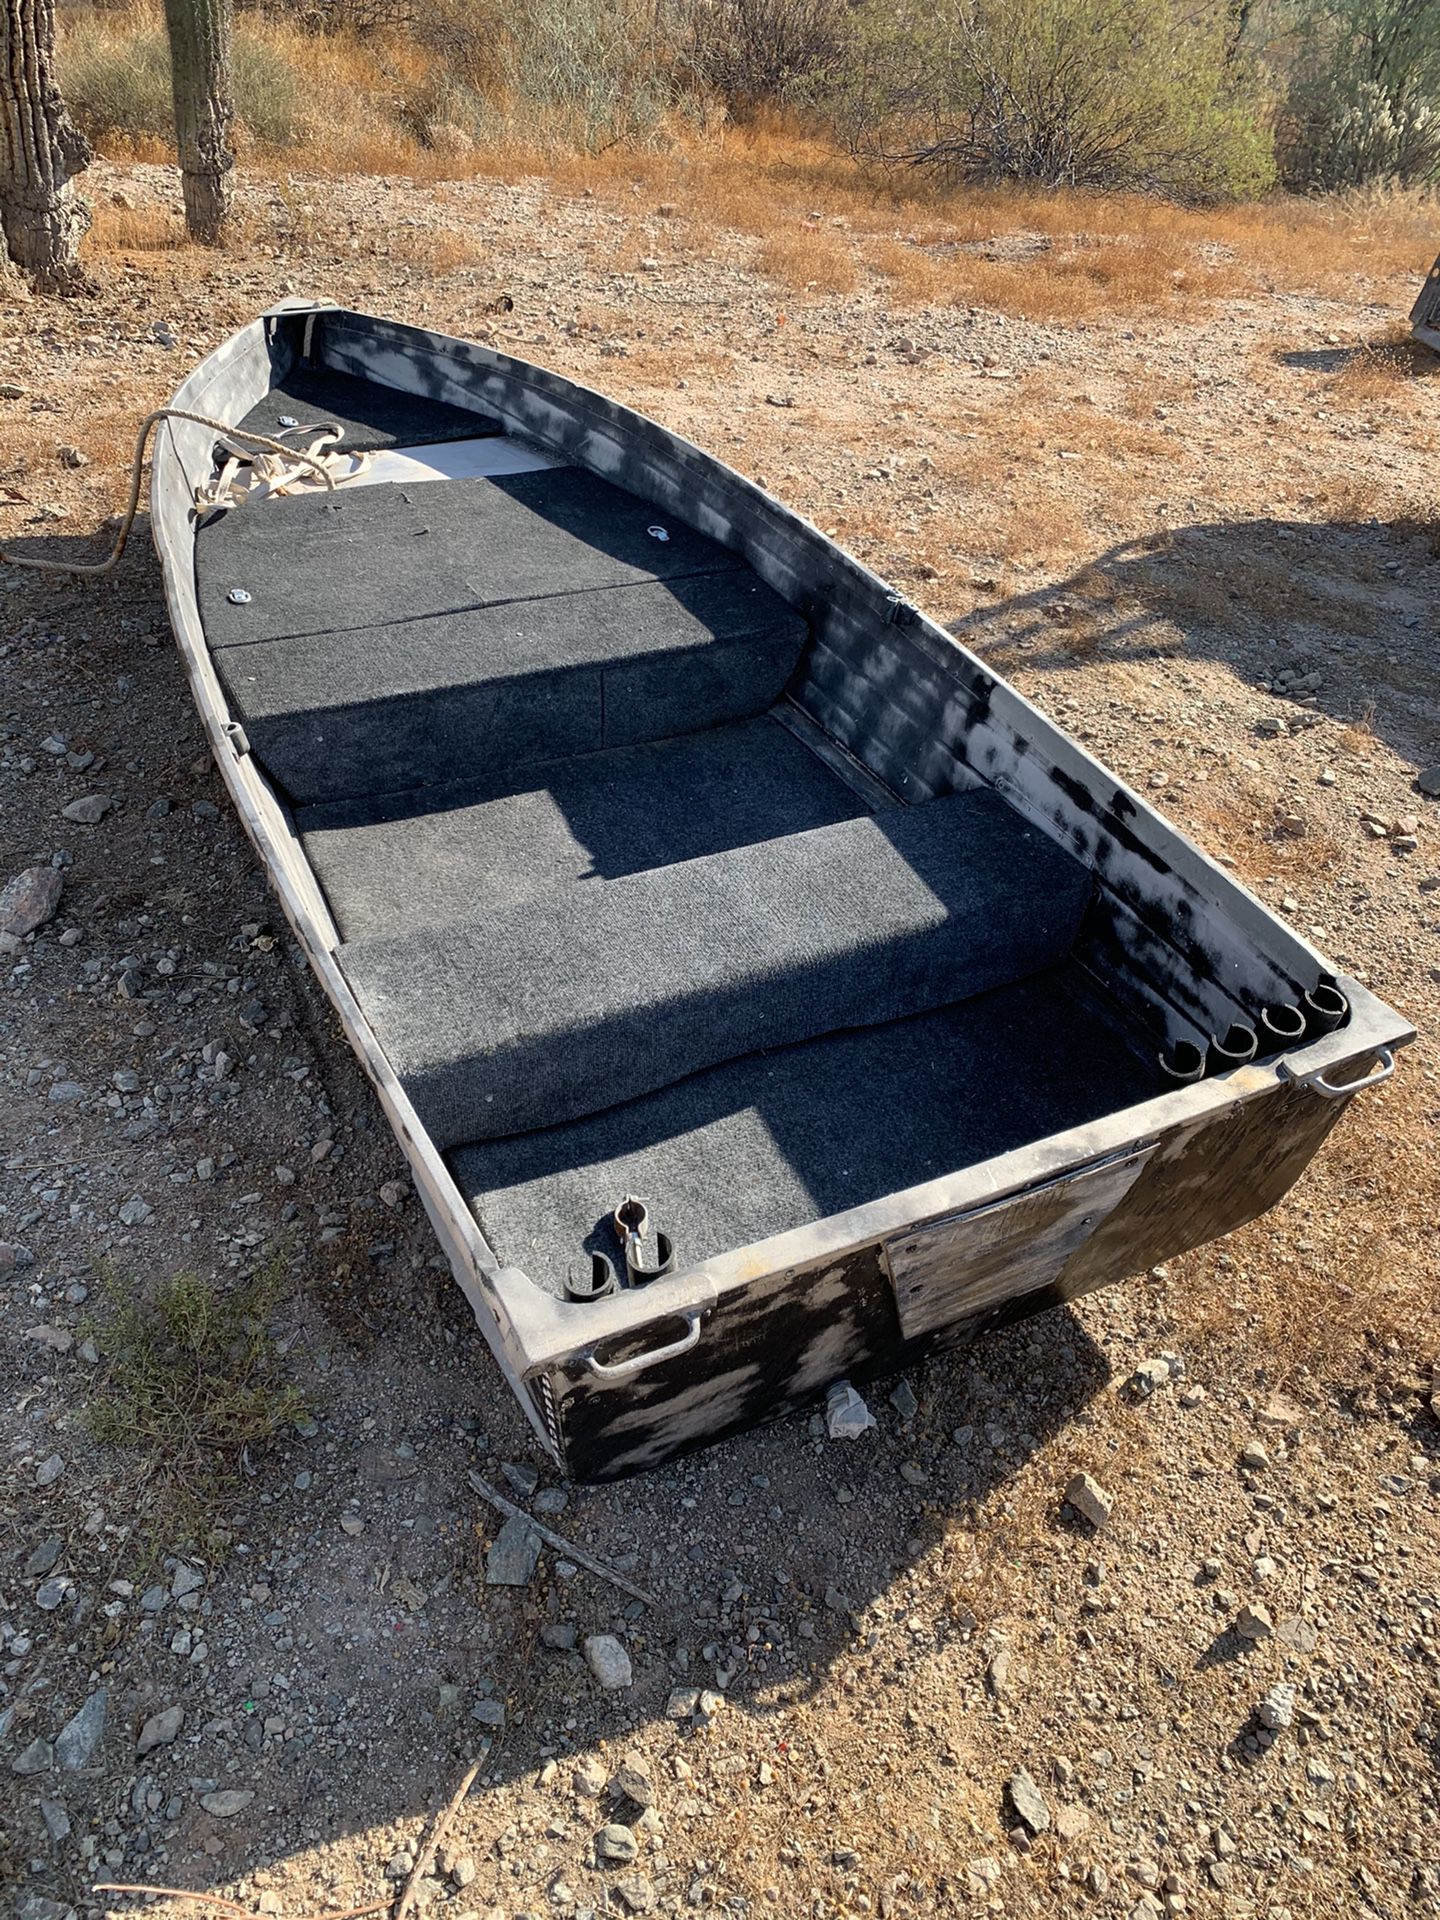 12 ft aluminum boat